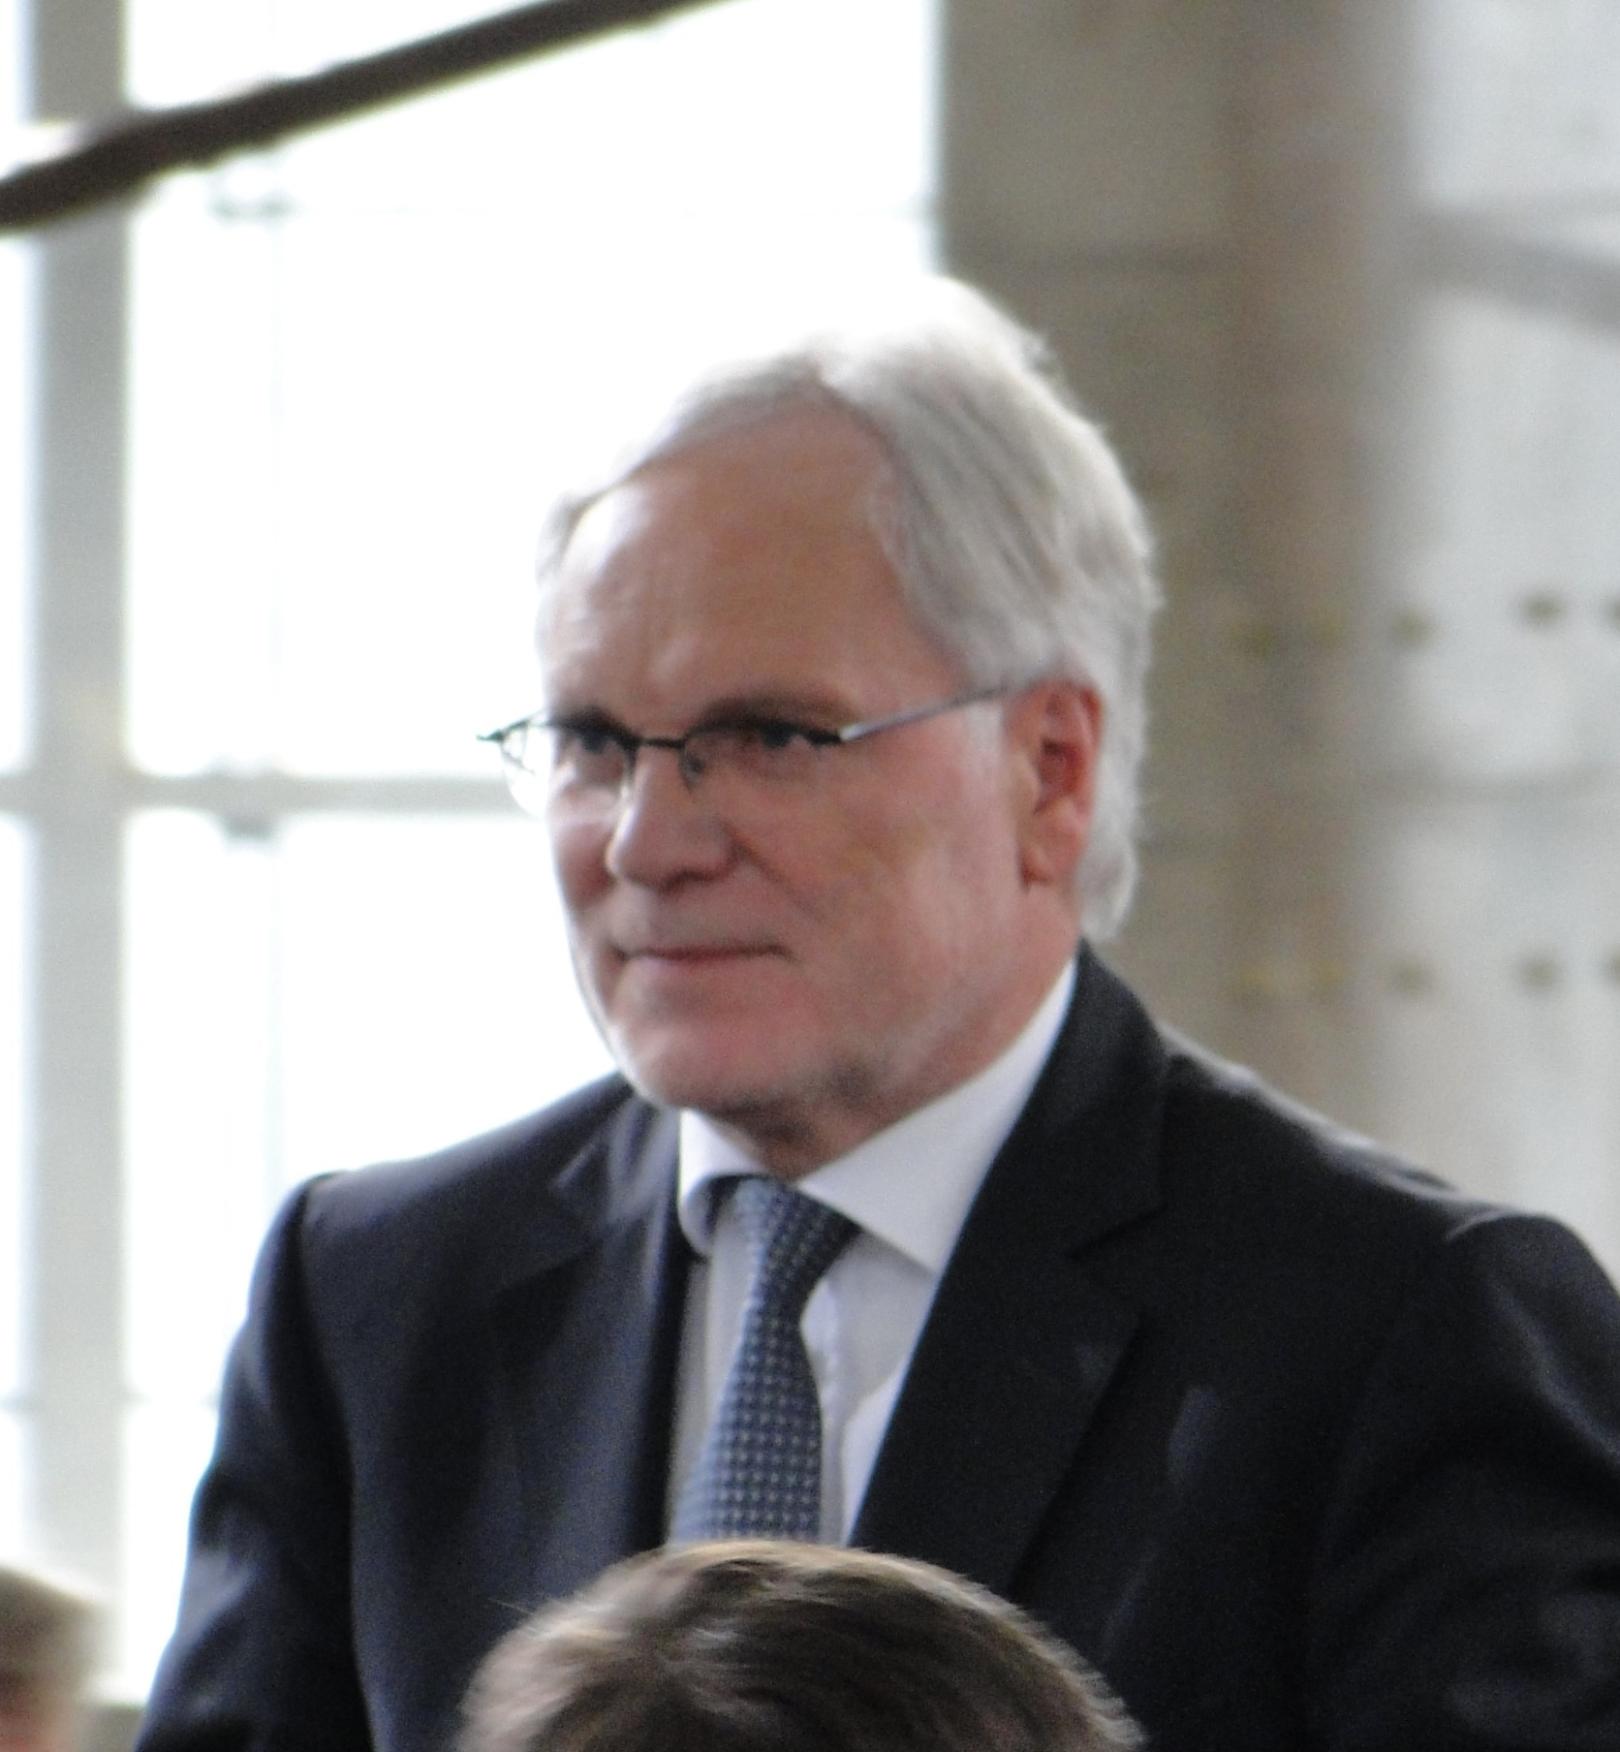 Prof. Dr. Markus Schächter 2009 in der Frankfurter Paulskirche (c) Von Dontworry - Eigenes Werk, CC BY-SA 3.0, https://commons.wikimedia.org/w/index.php?curid=8226419